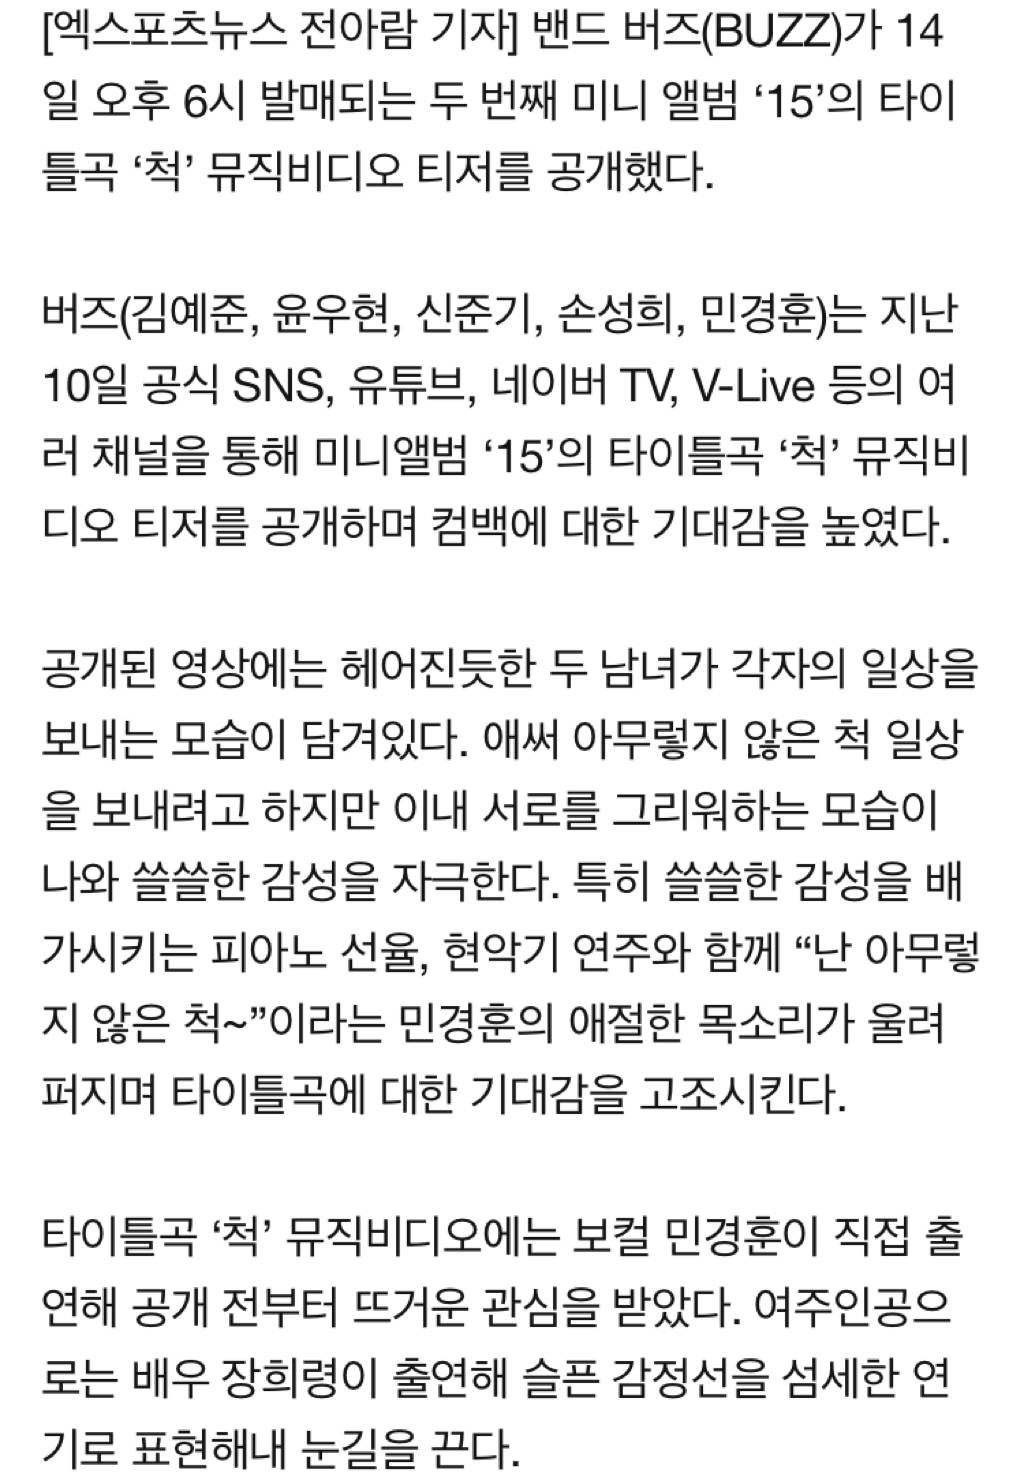 버즈, 14일 새 앨범 발매…민경훈, 타이틀곡 '척' MV 직접 출연 | 인스티즈